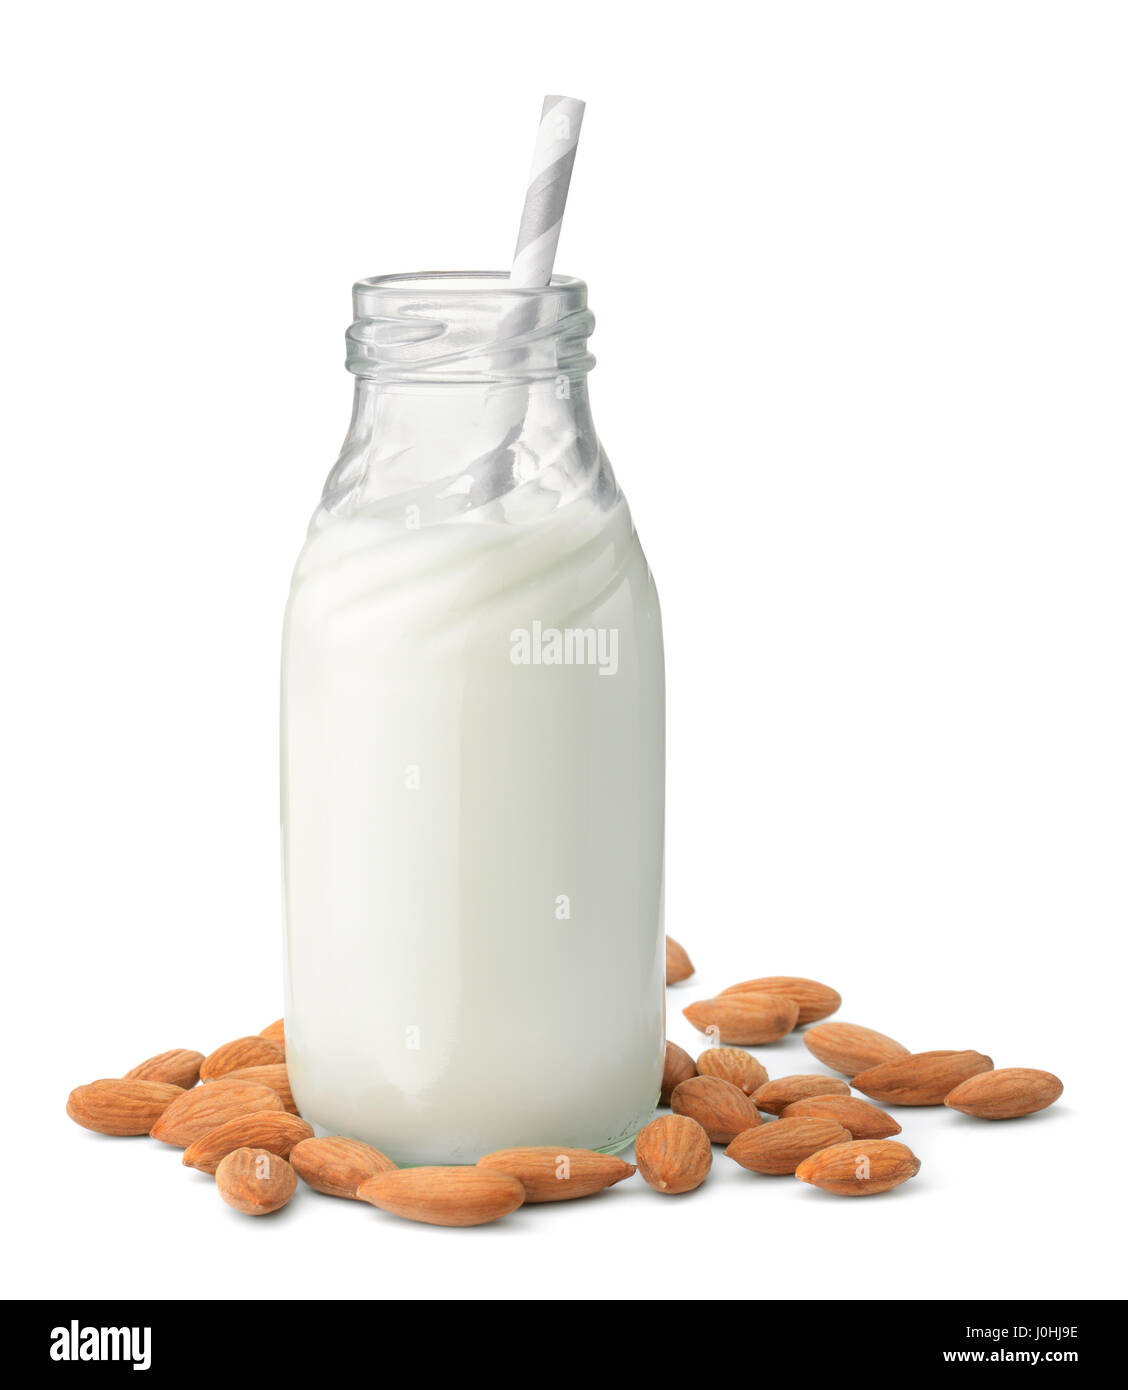 Le flacon en verre de lait d'amande isolated on white Banque D'Images